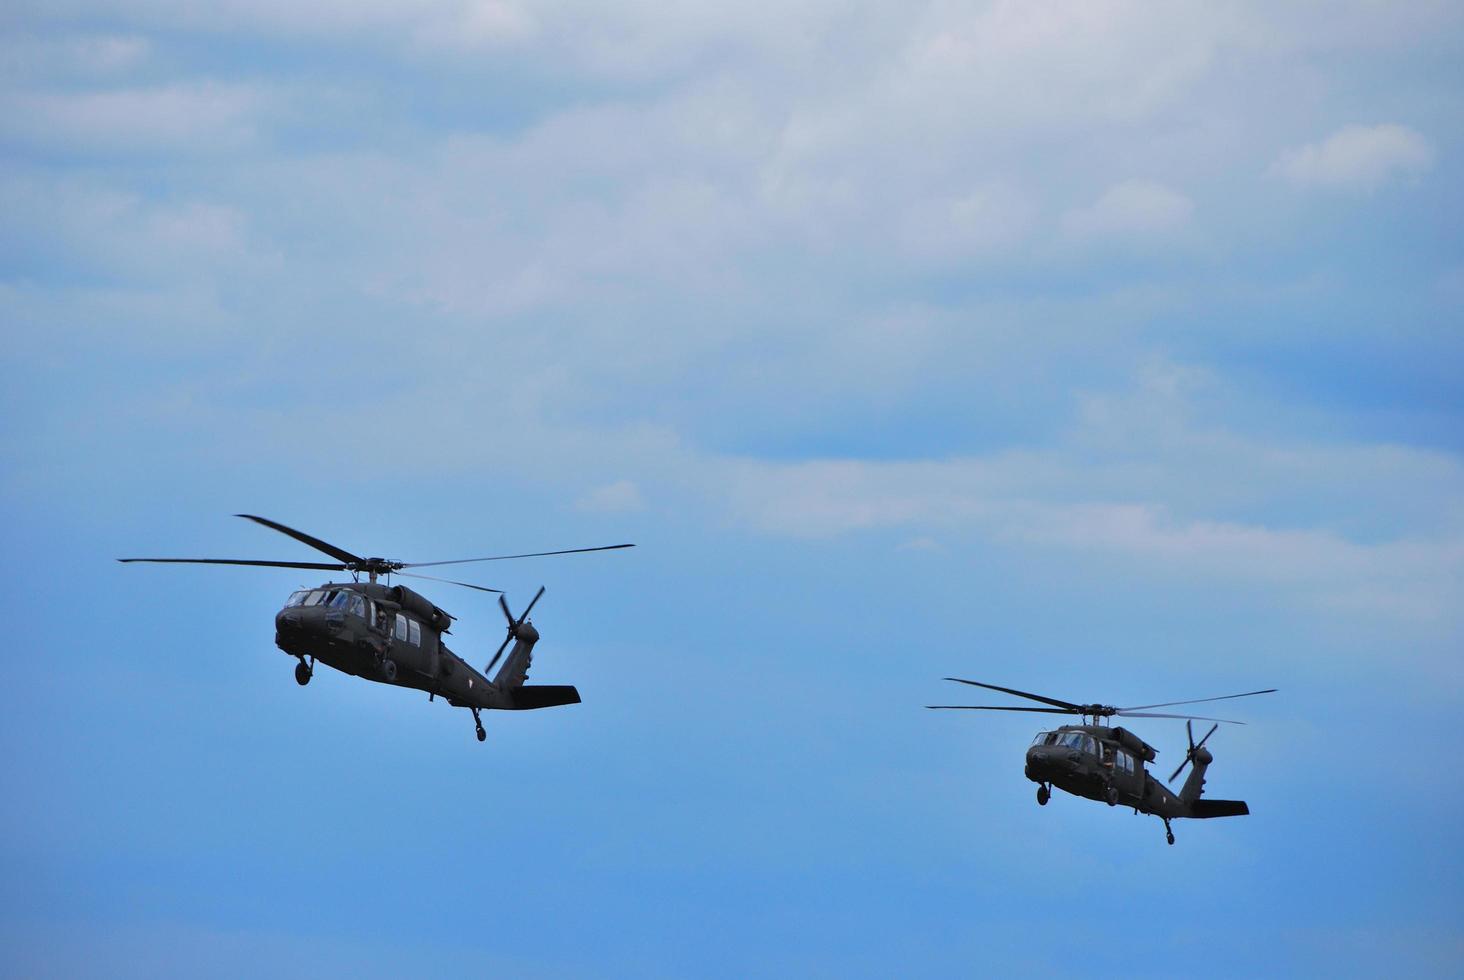 deux hélicoptères militaires volent côte à côte photo